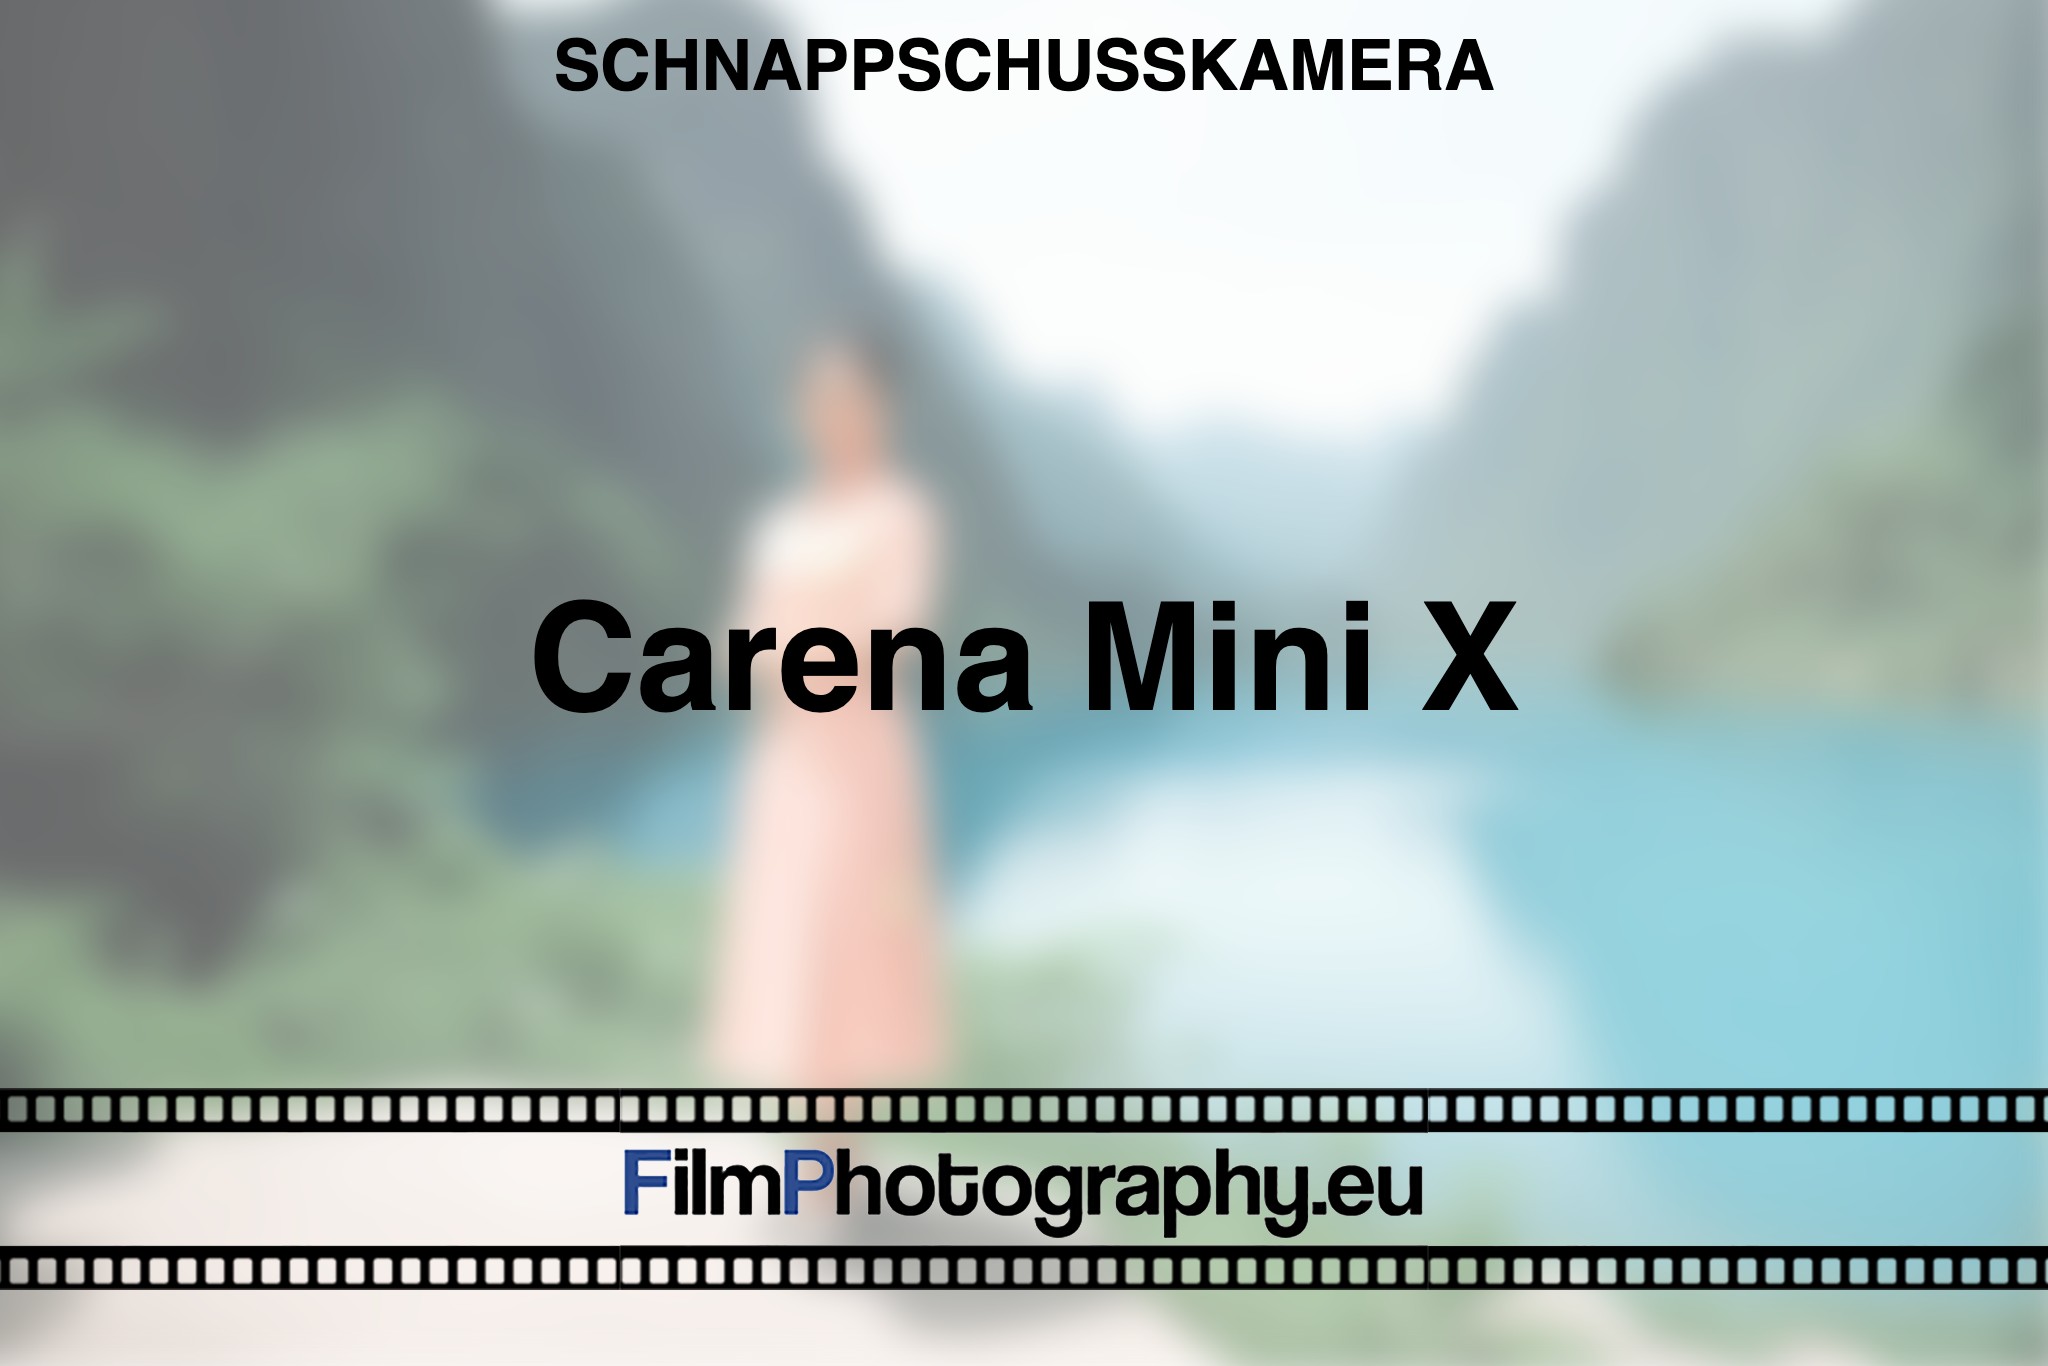 carena-mini-x-schnappschusskamera-bnv